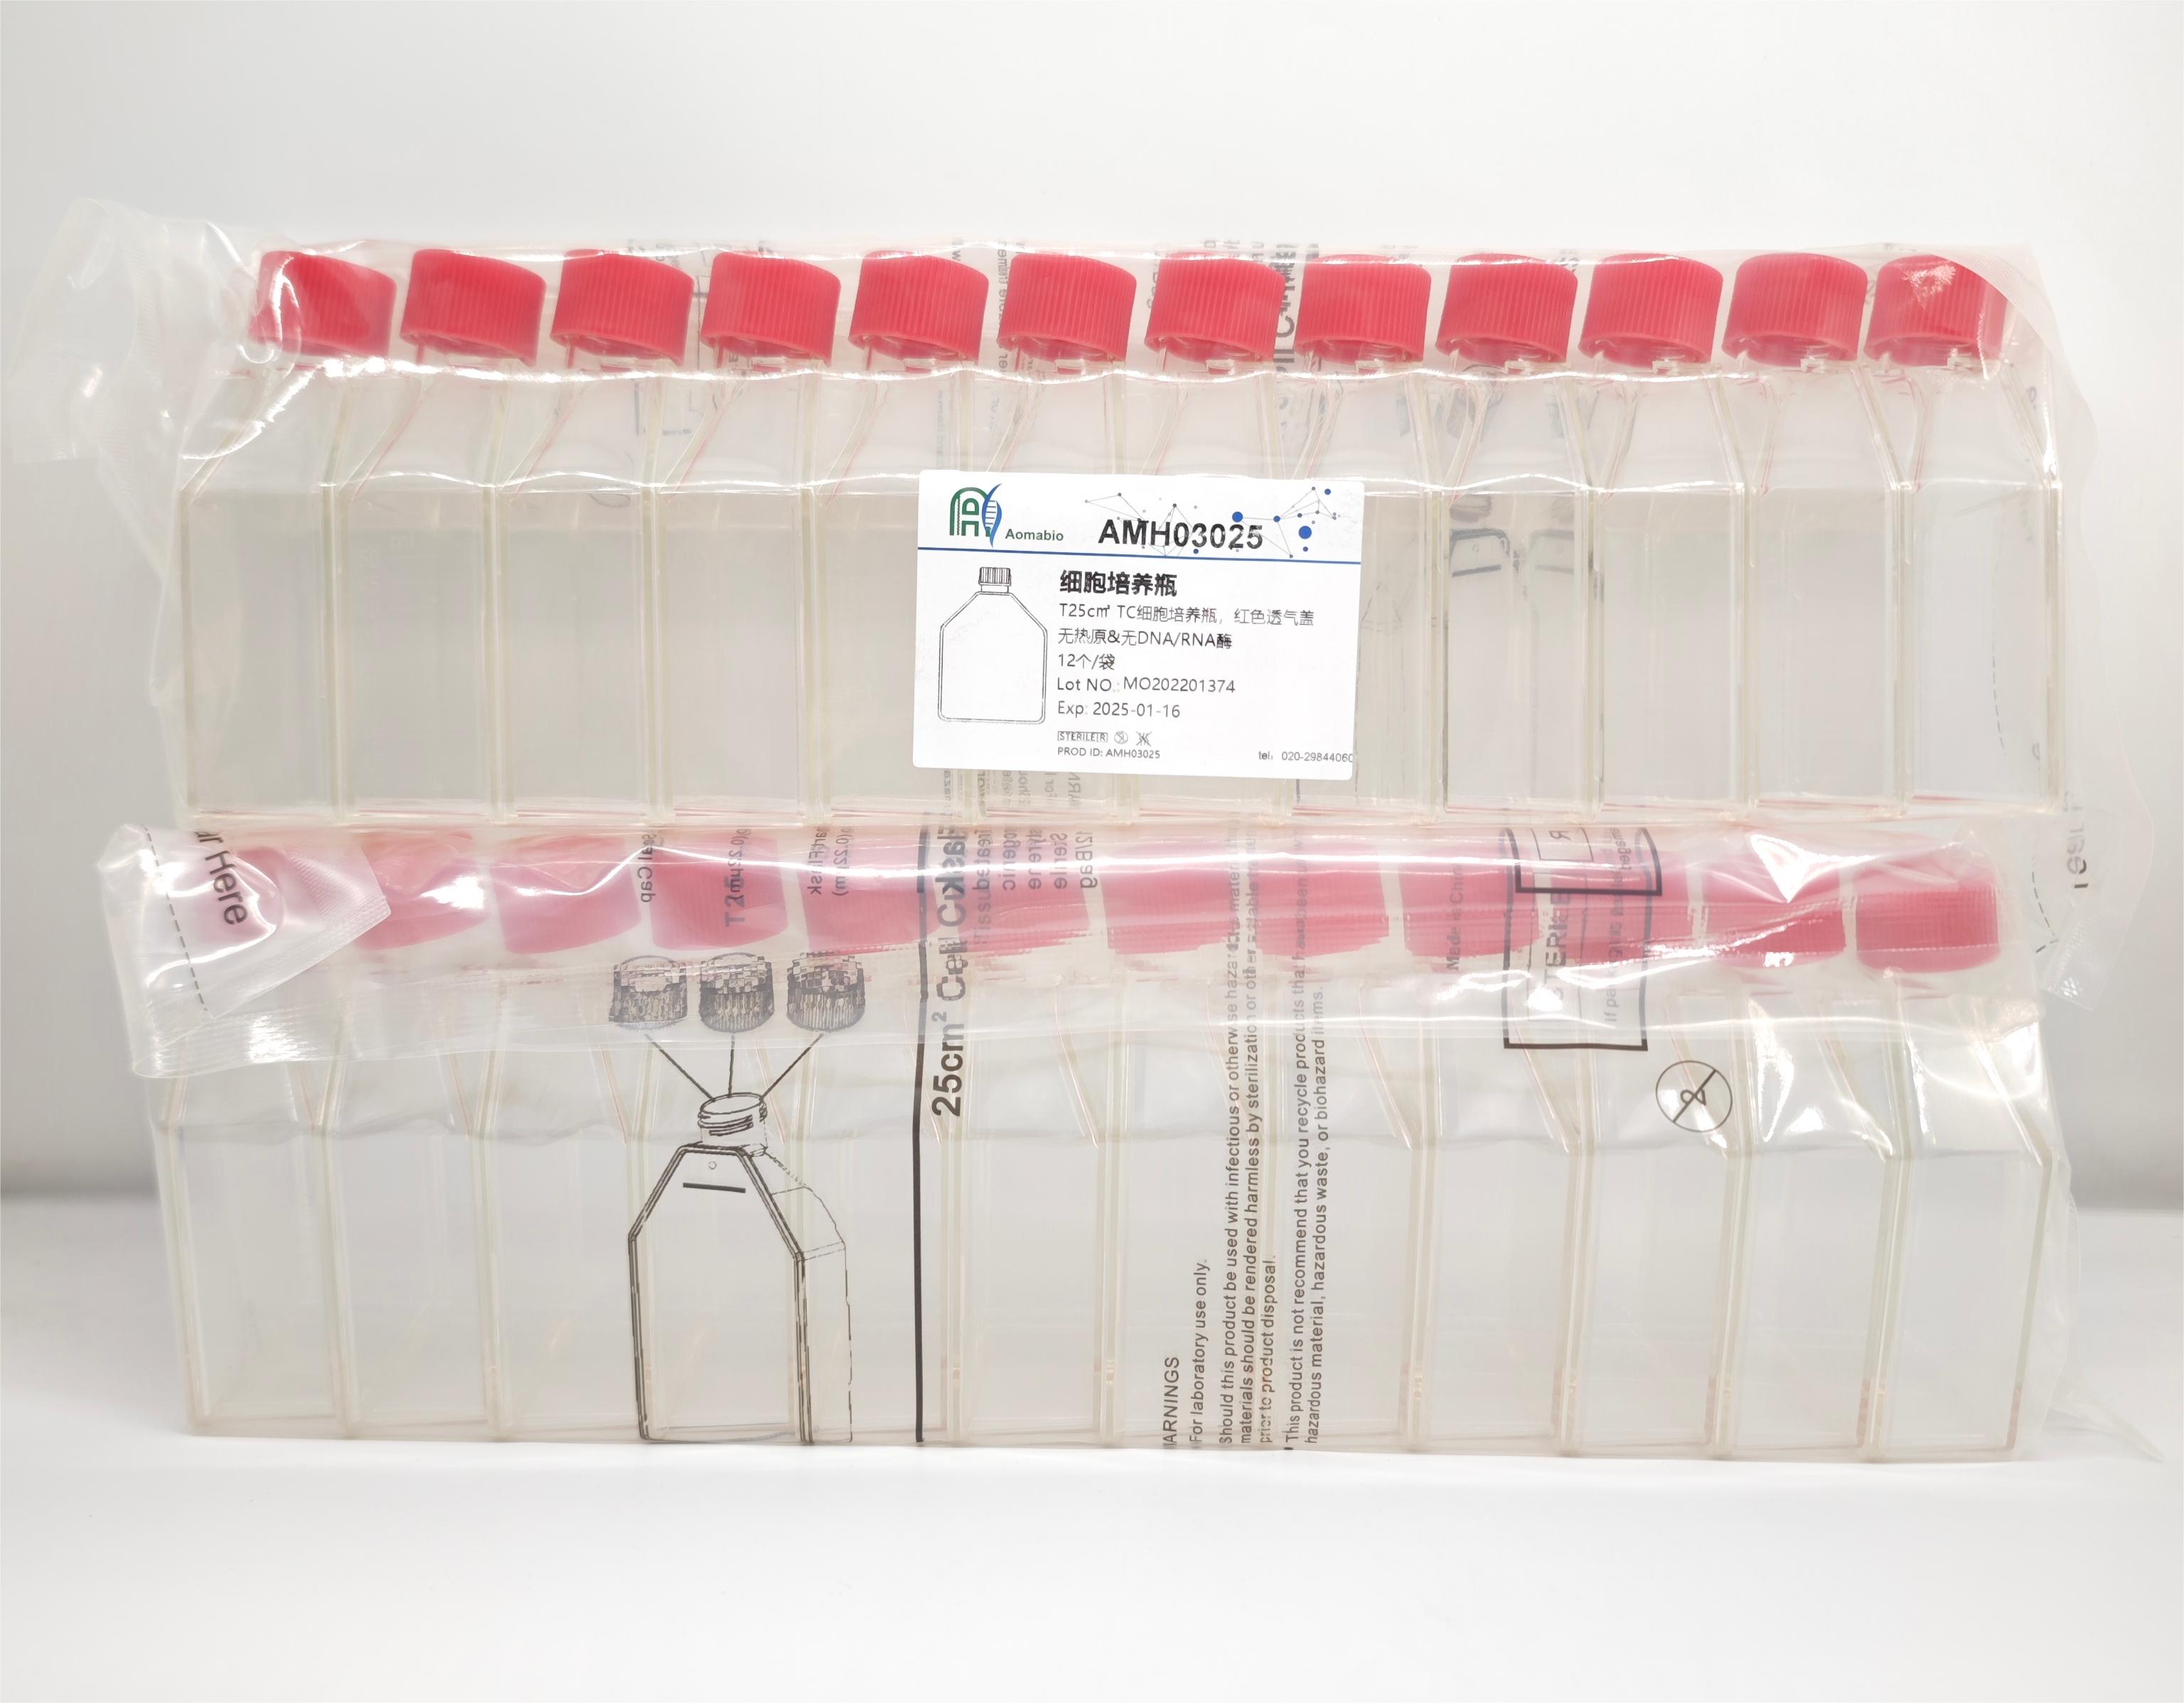 T25c㎡ TC细胞培养瓶，袋装灭菌，红色透气盖